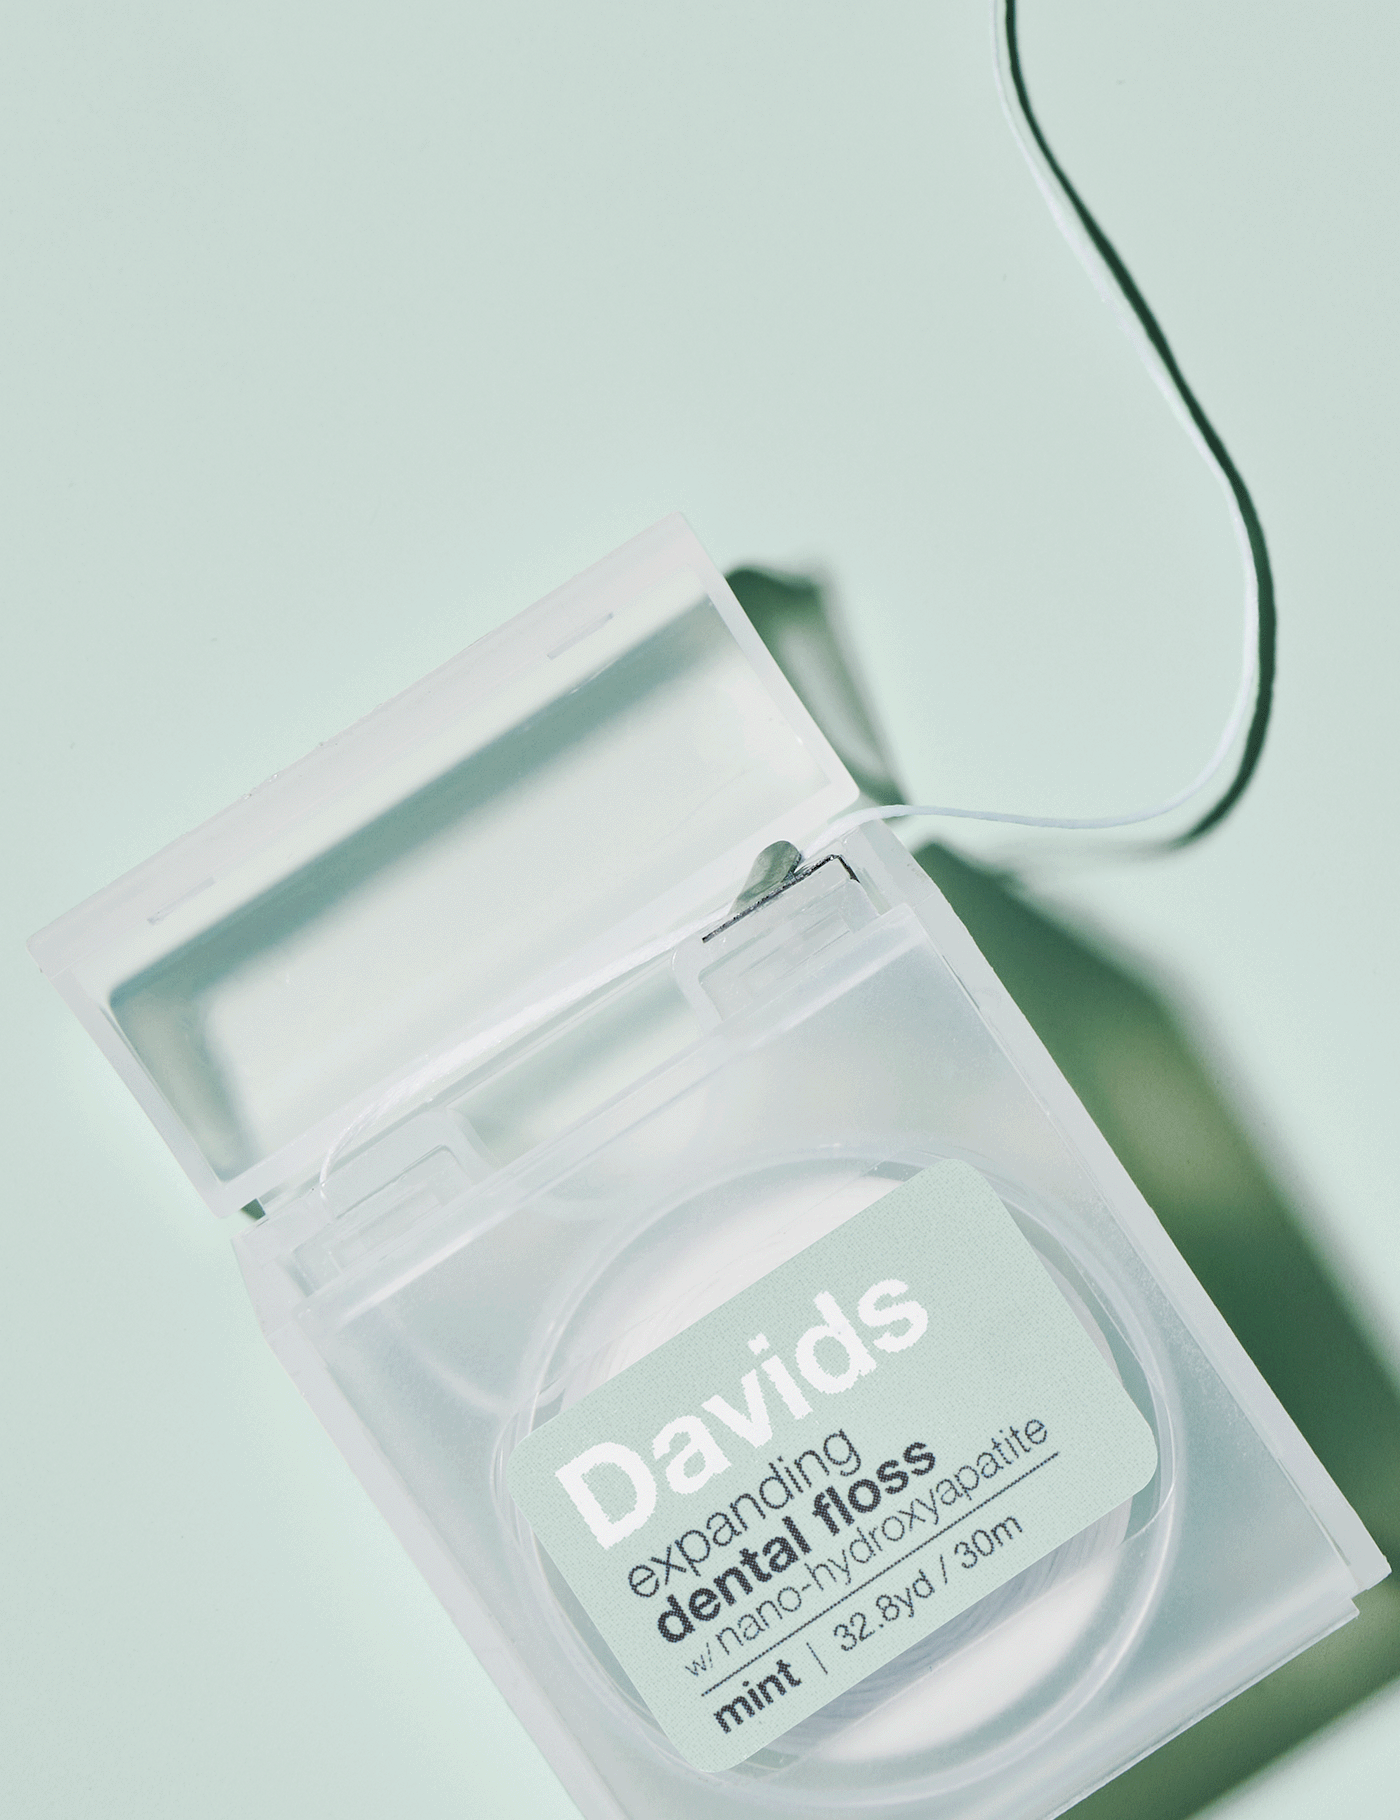 Davids expanding dental floss / refillable dispenser / mint